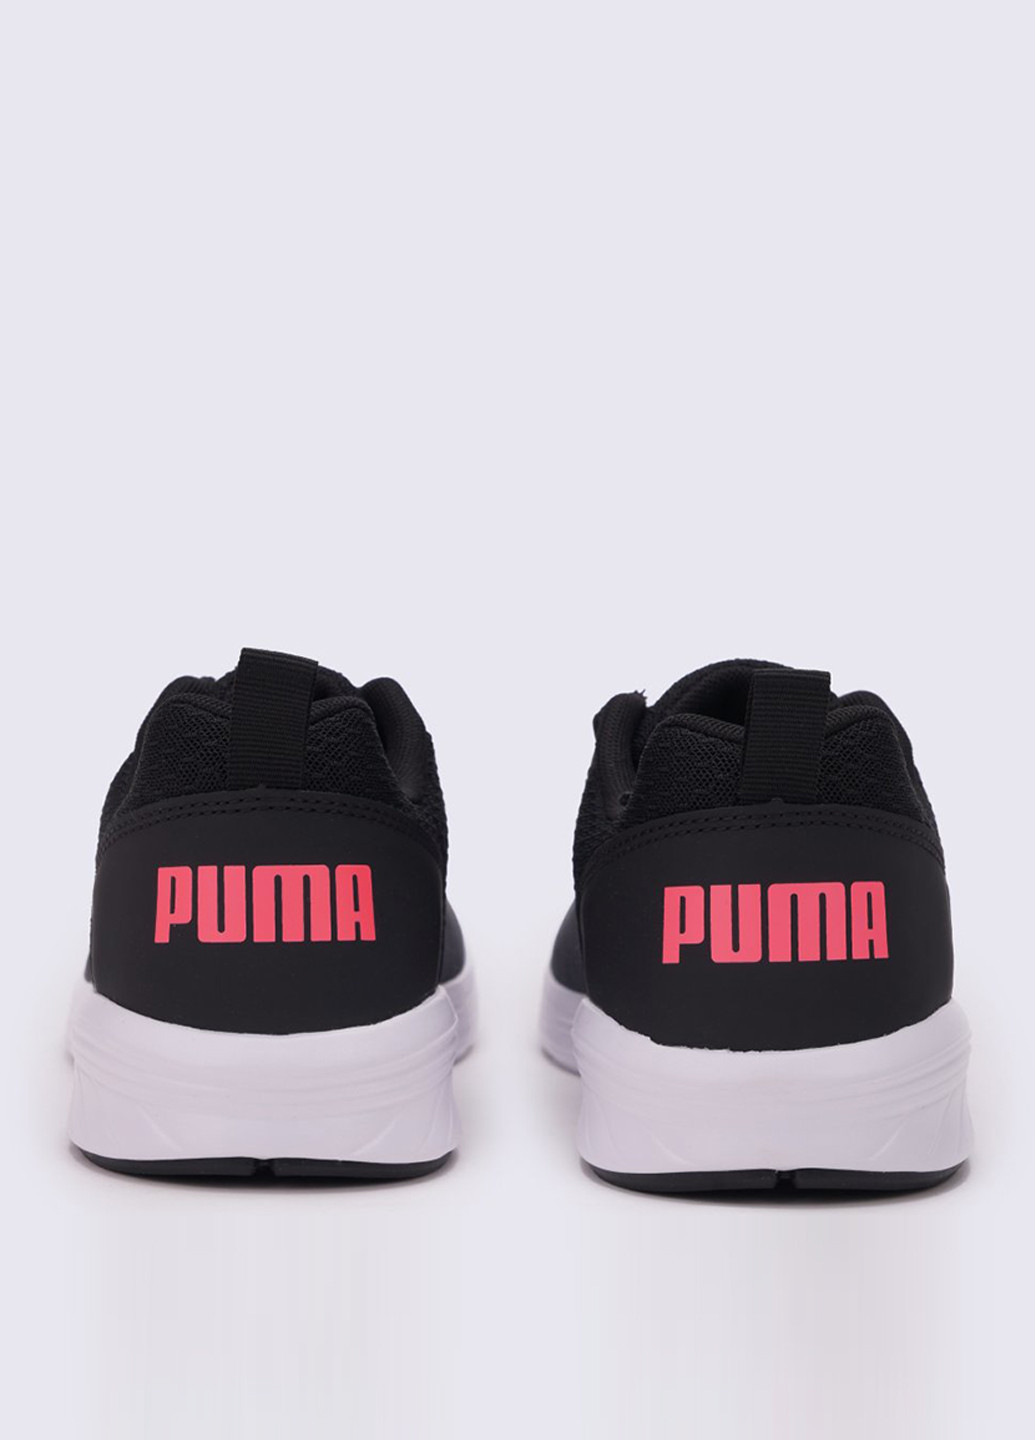 Черные всесезонные кроссовки Puma Nrgy Comet